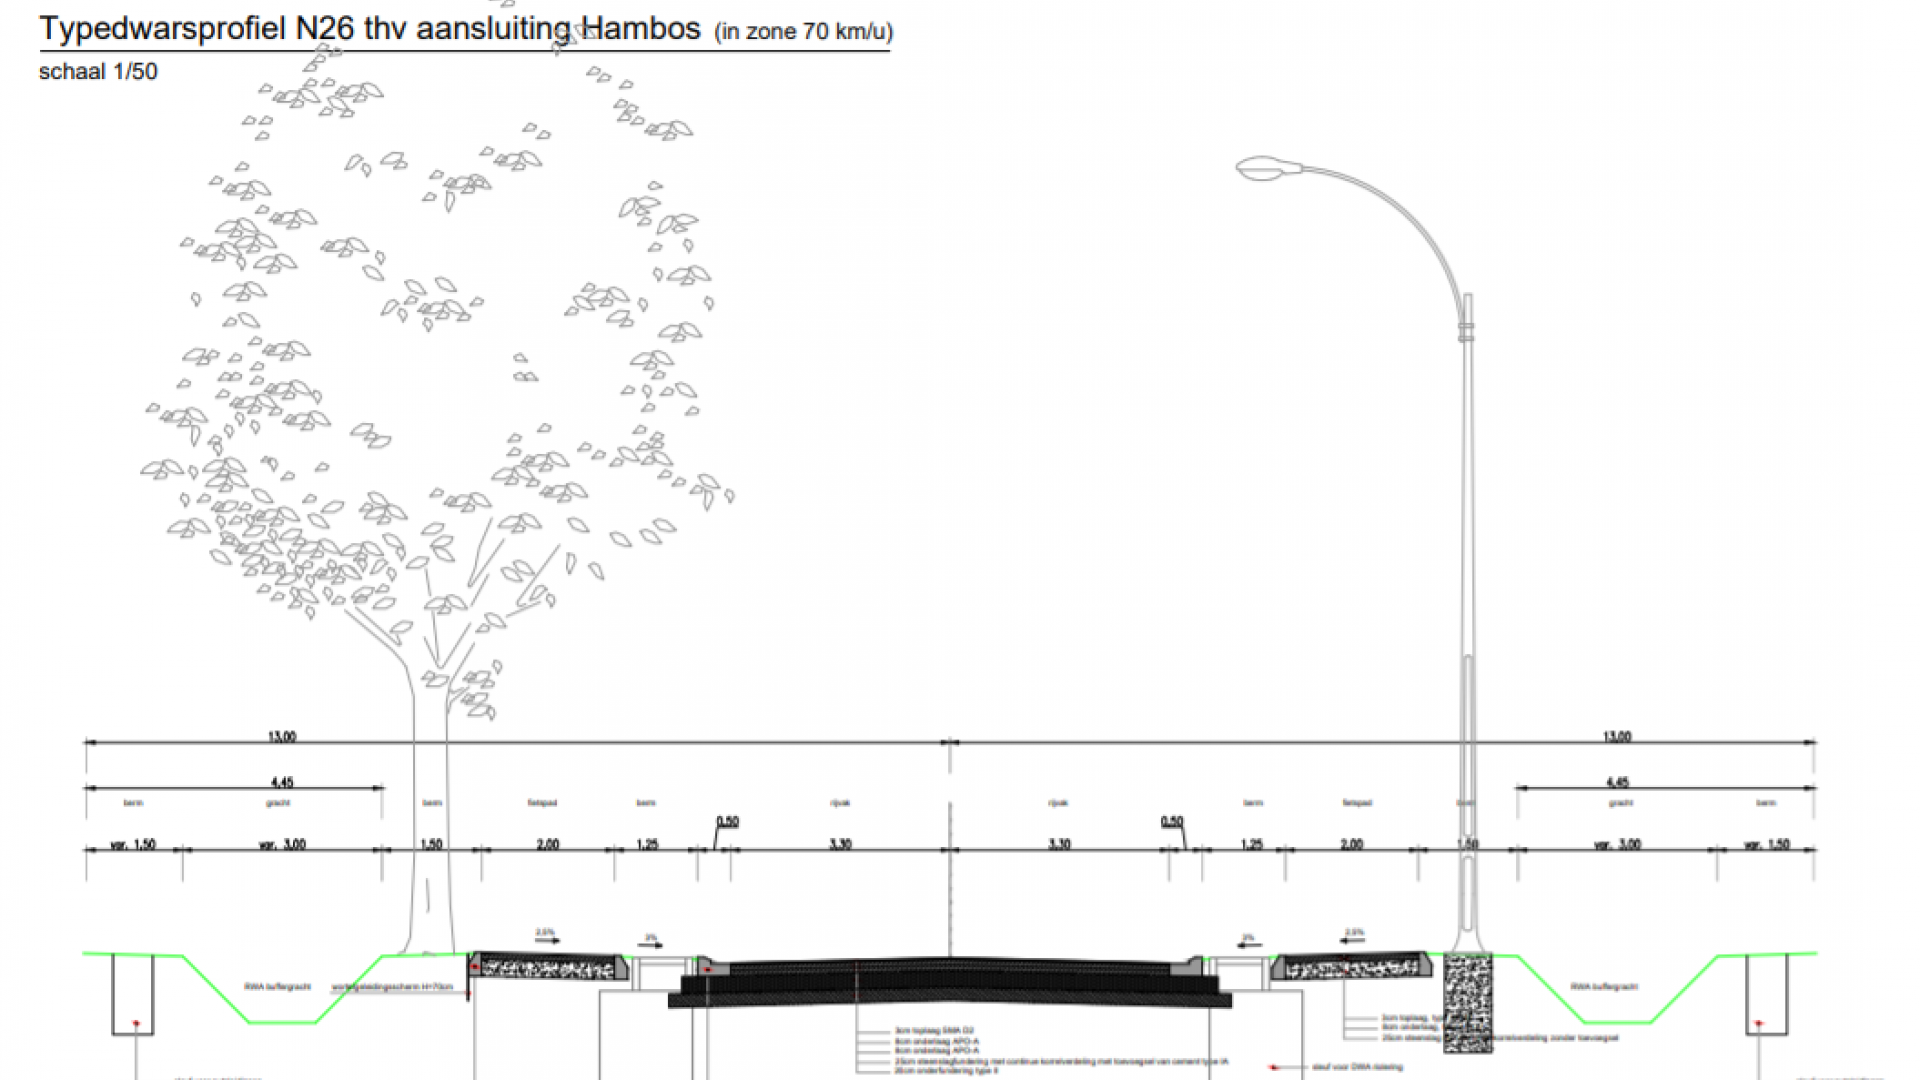 Typedwarsprofiel van de Mechelsesteenweg ter hoogte van de aansluiting met Hambos